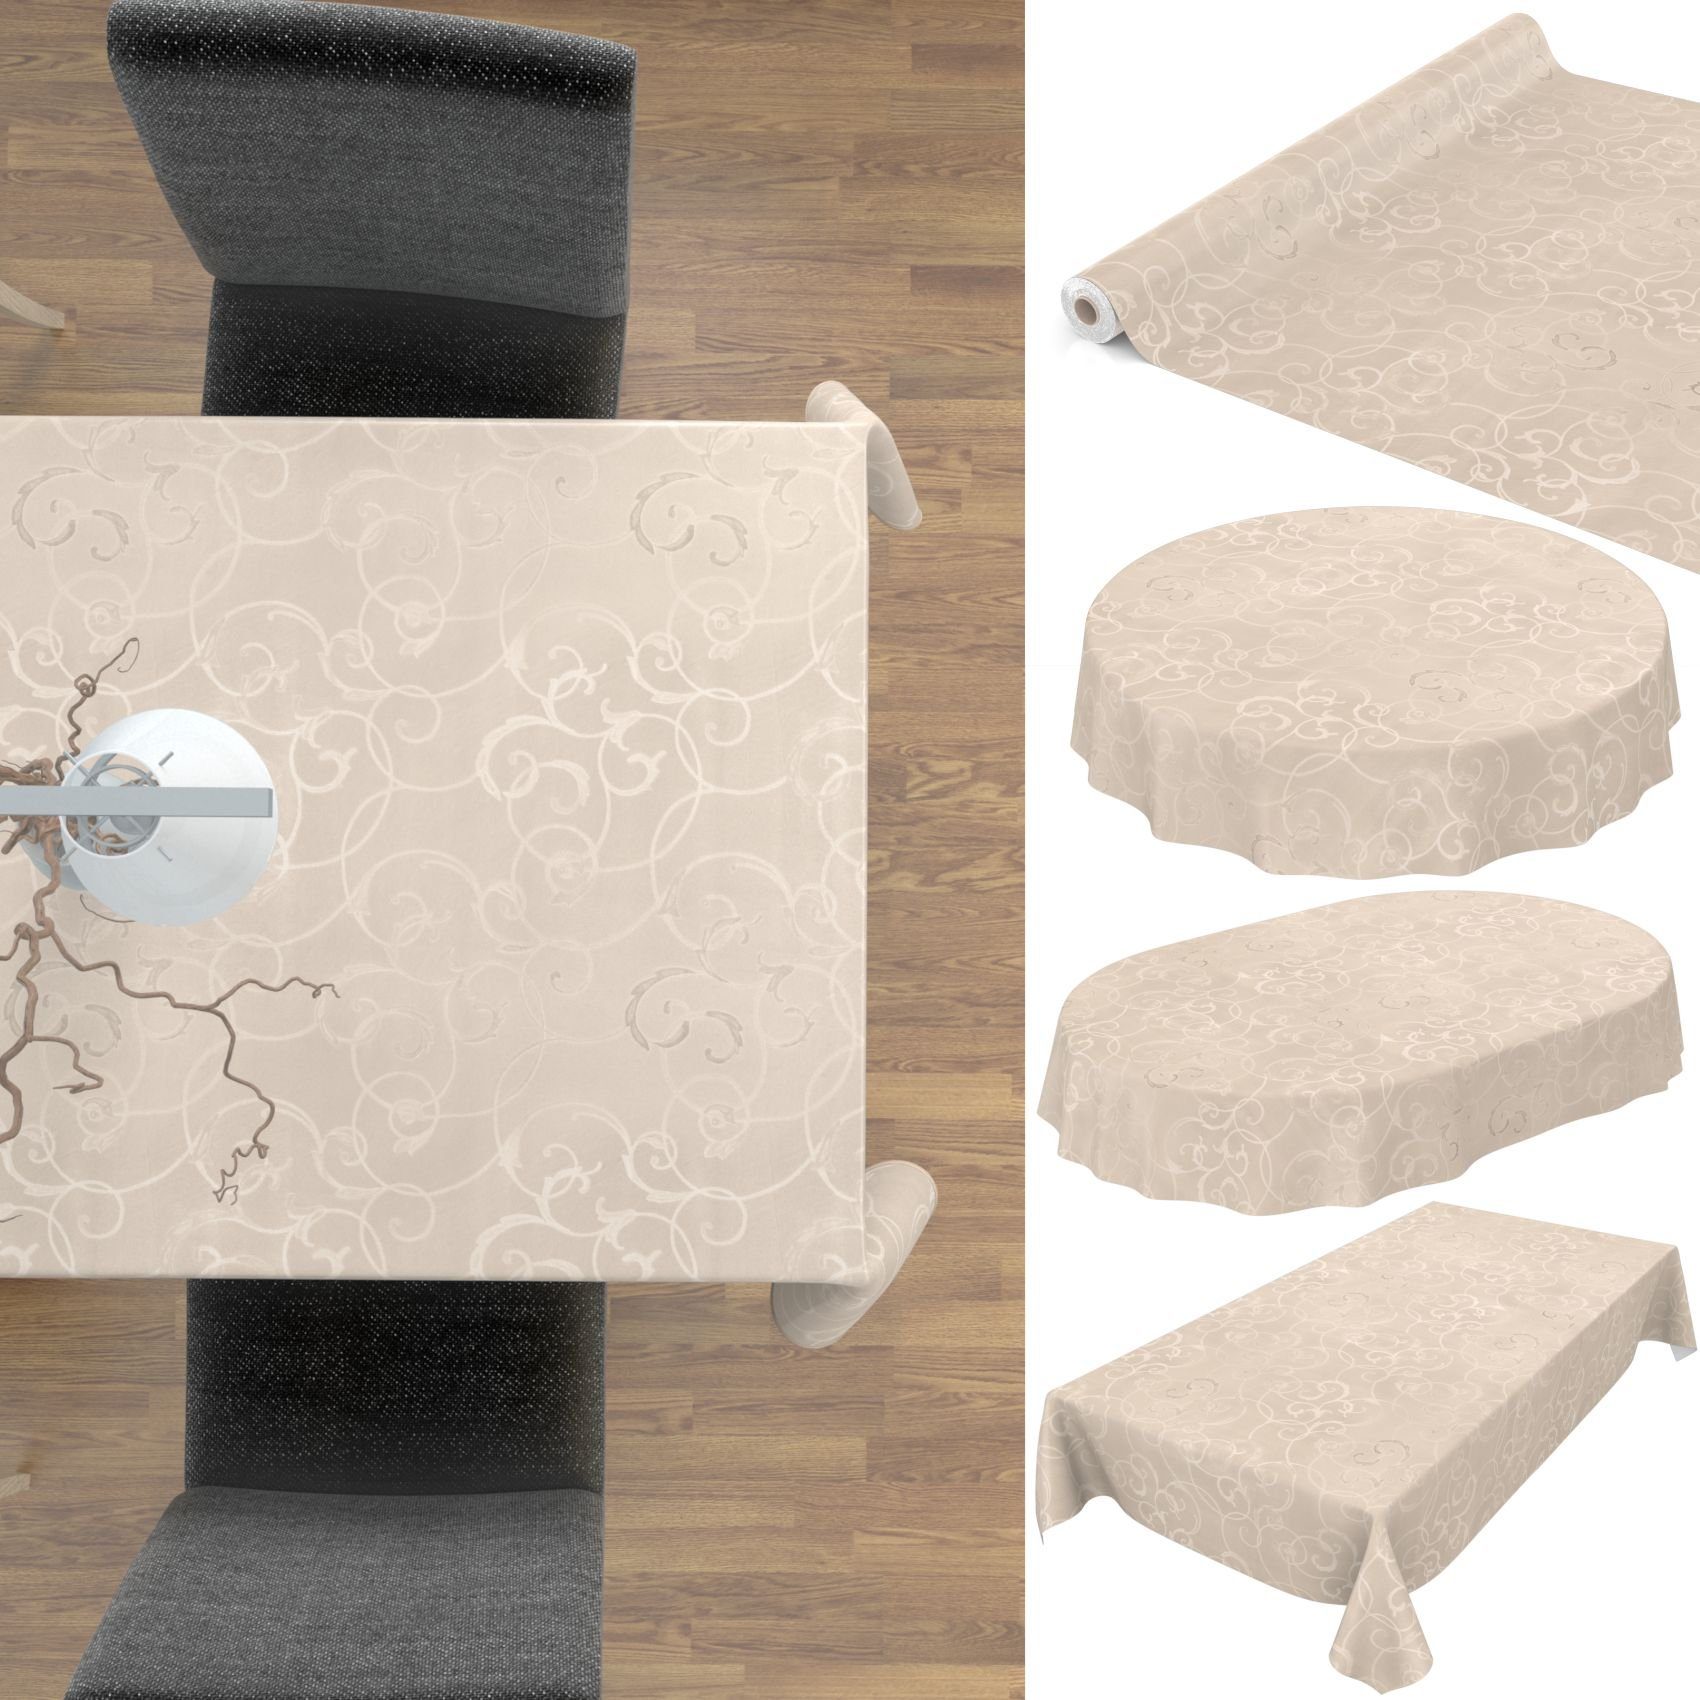 ANRO Premium Damast wasserabweisend Gartentischdecke, Tischdecke 155x240cm Oval Geprägt Wachstuchtischdecke